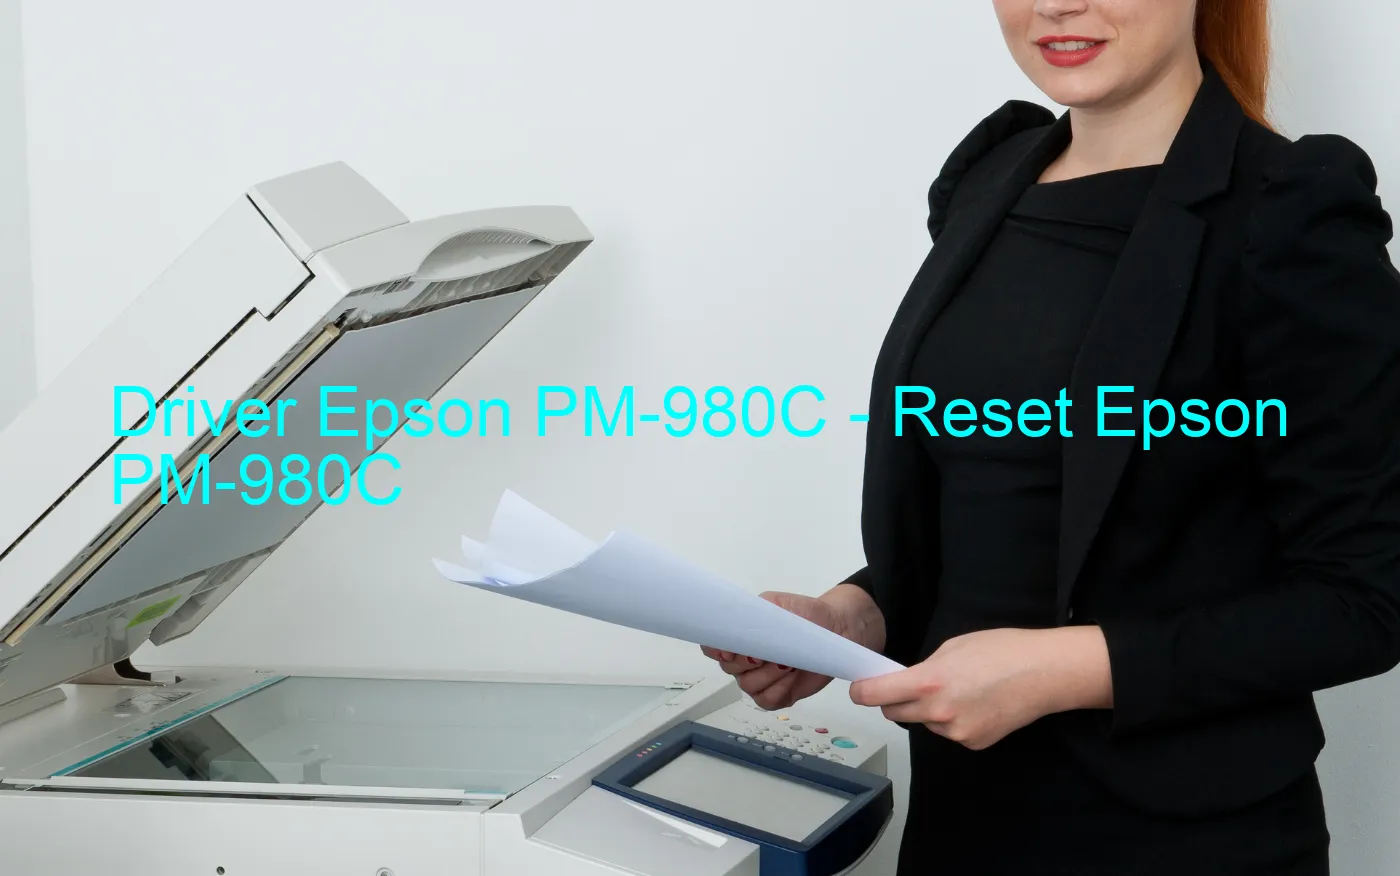 Epson PM-980Cのドライバー、Epson PM-980Cのリセットソフトウェア